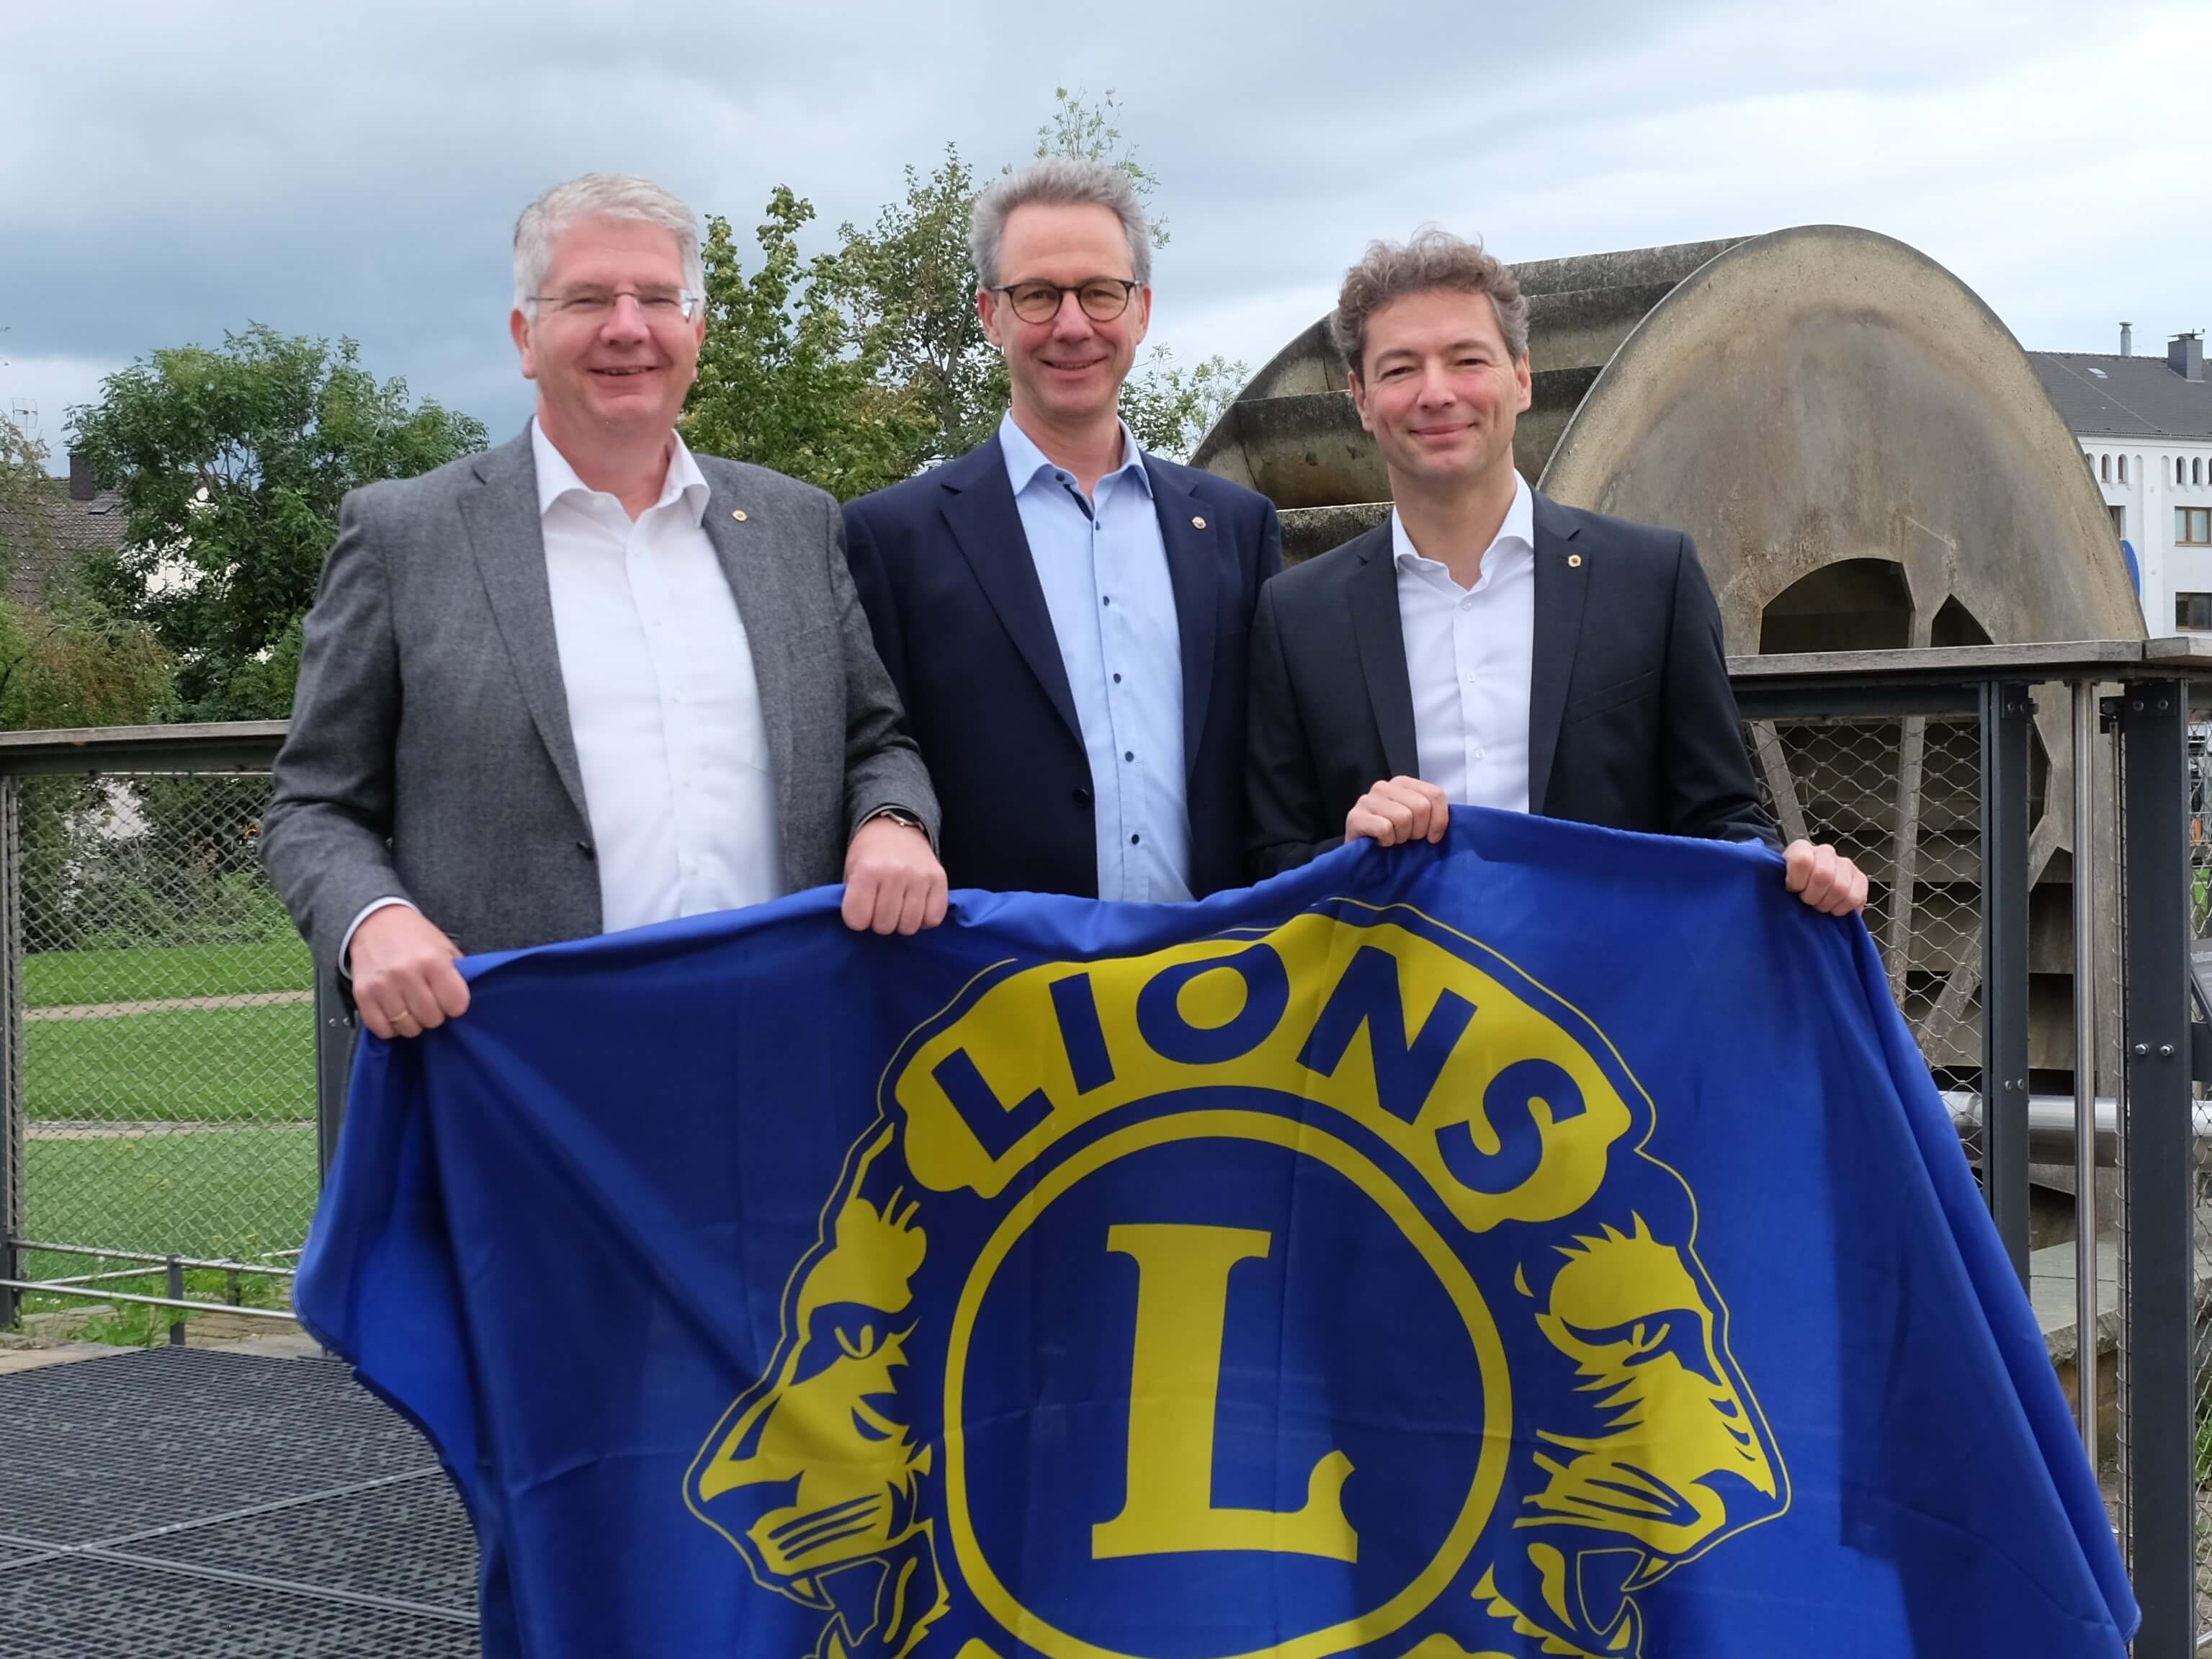 Foto (von links nach rechts): Die Präsidenten der drei Lions Clubs in Paderborn: Dr. Wiro Wickord, Martin Kühle und Markus Herzig